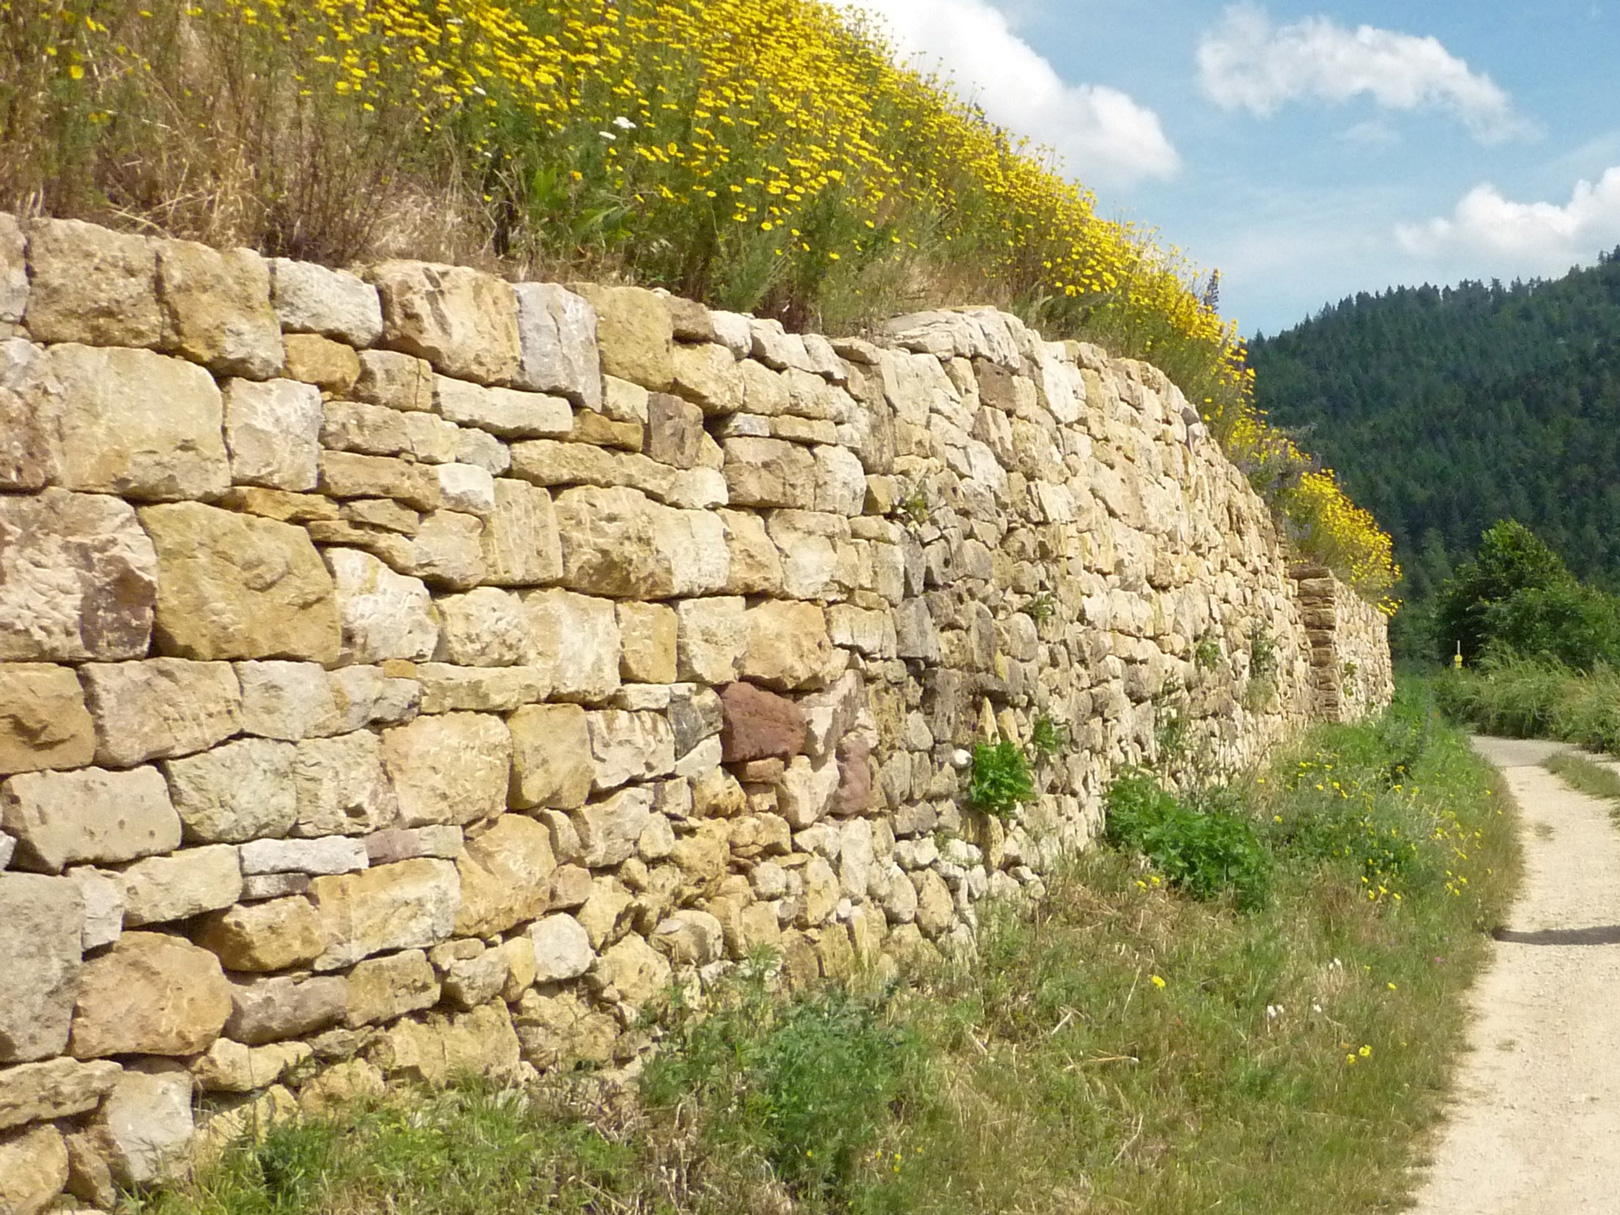 À côté d'un chemin naturel, vous pouvez voir un beau grand mur en pierre sèche, qui offre beaucoup d'espace de nidification pour les abeilles sauvages.